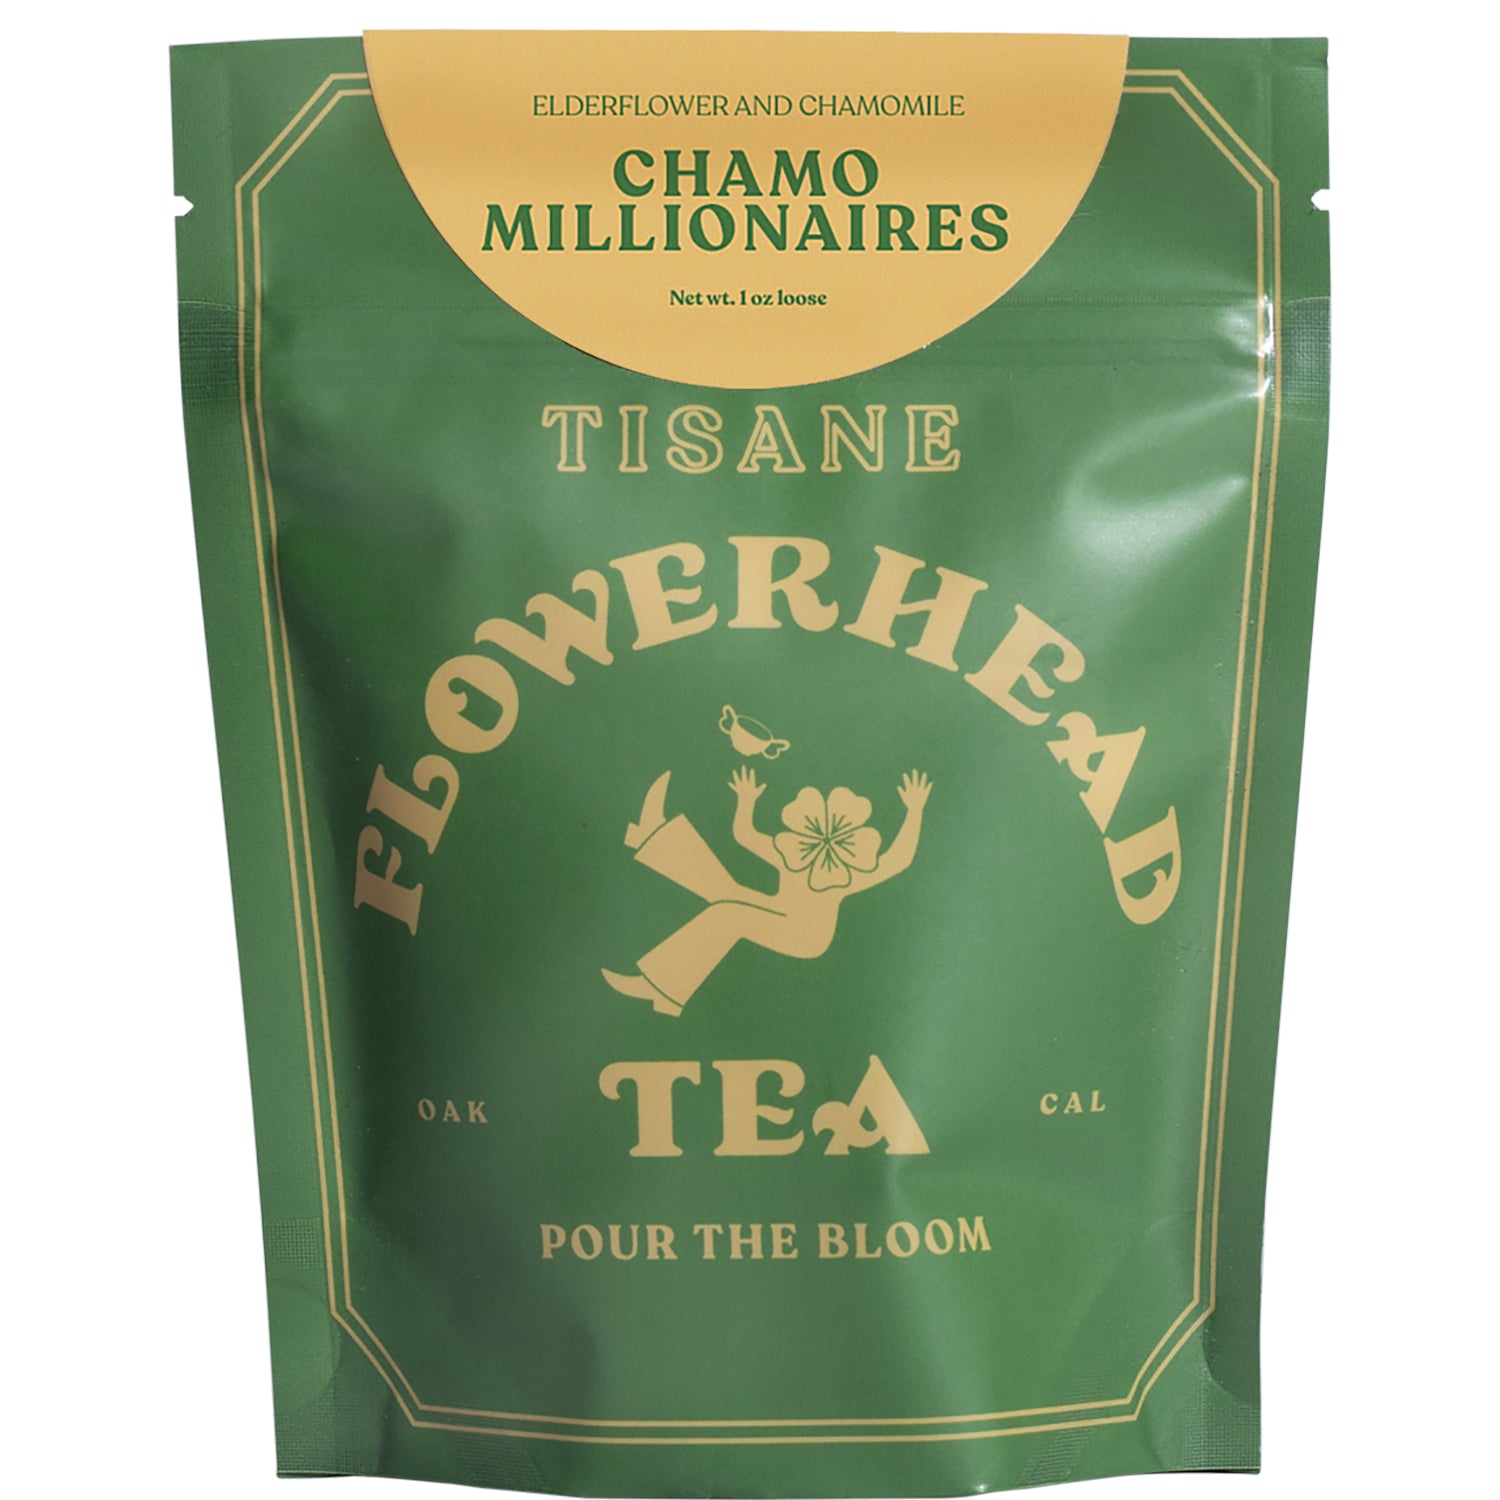 Chamomillionaires Tea - Flowerhead Tea